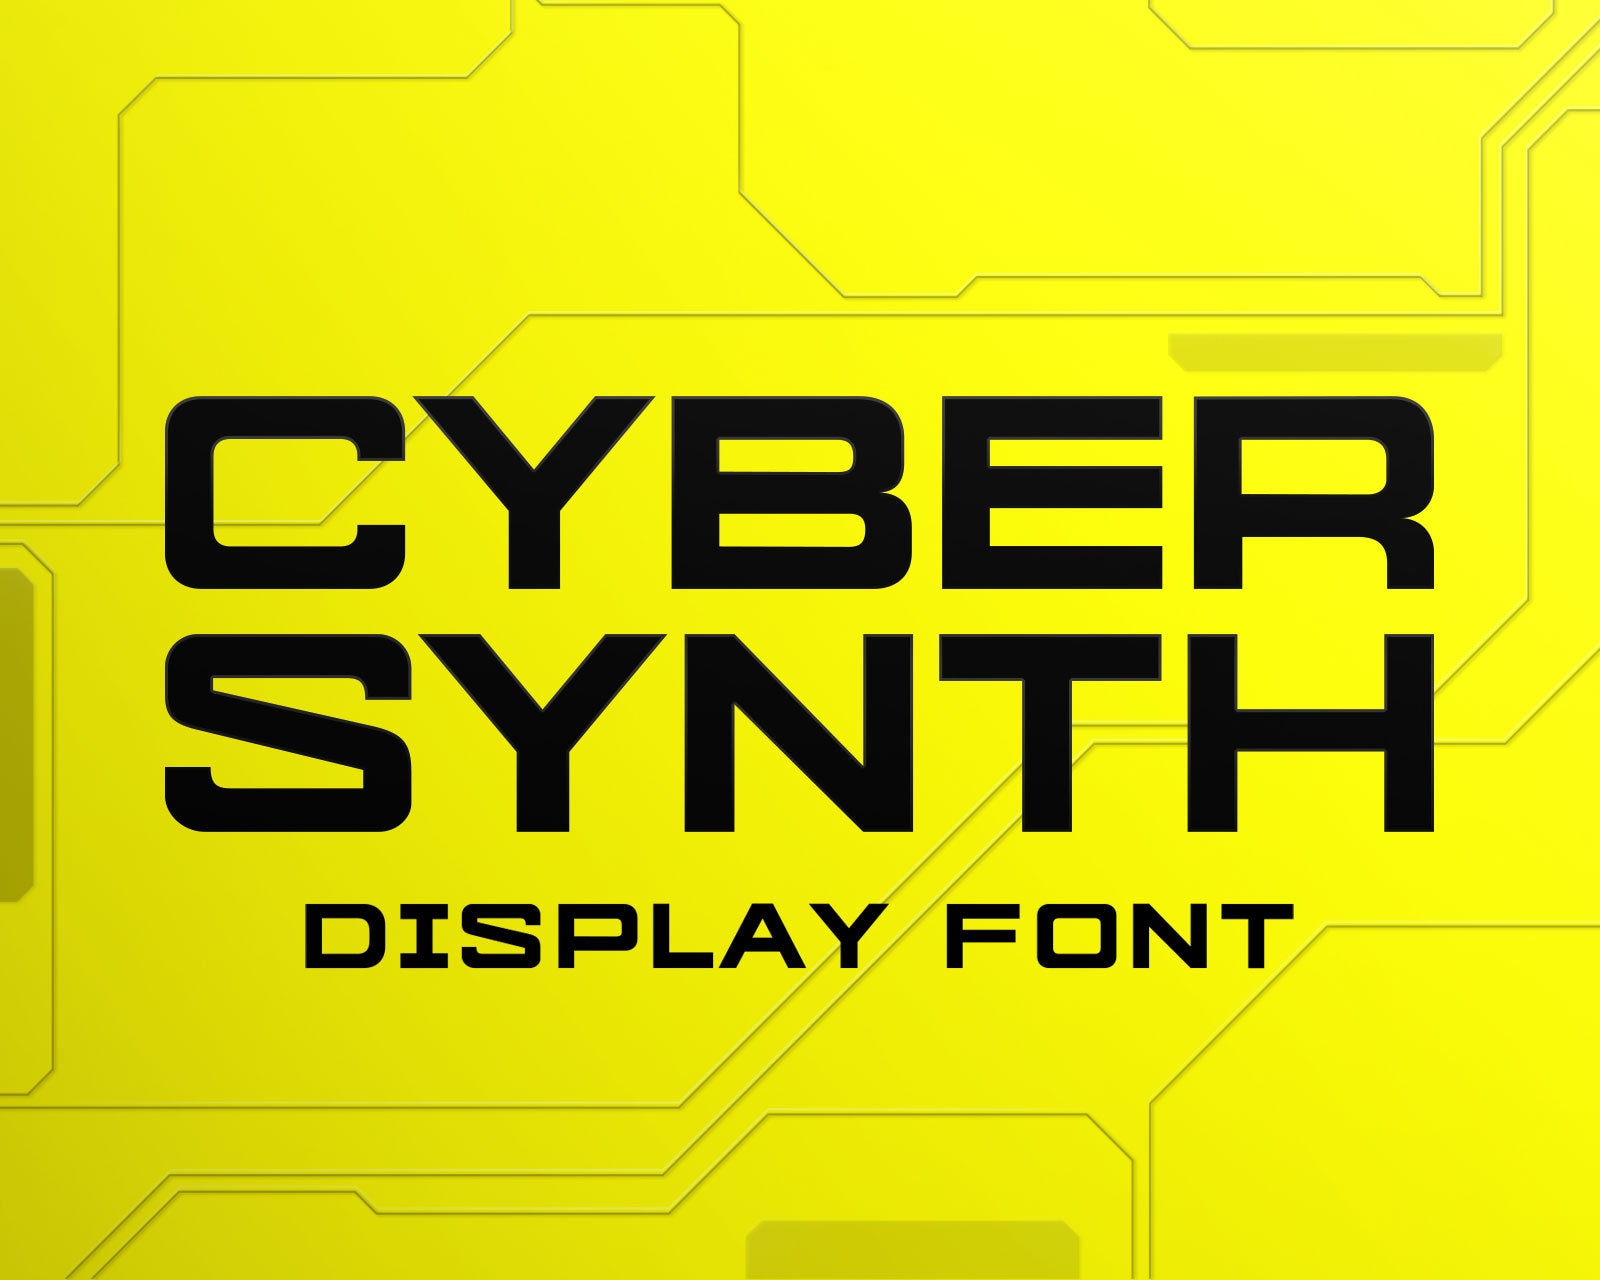 Cyberpunk font фото 74